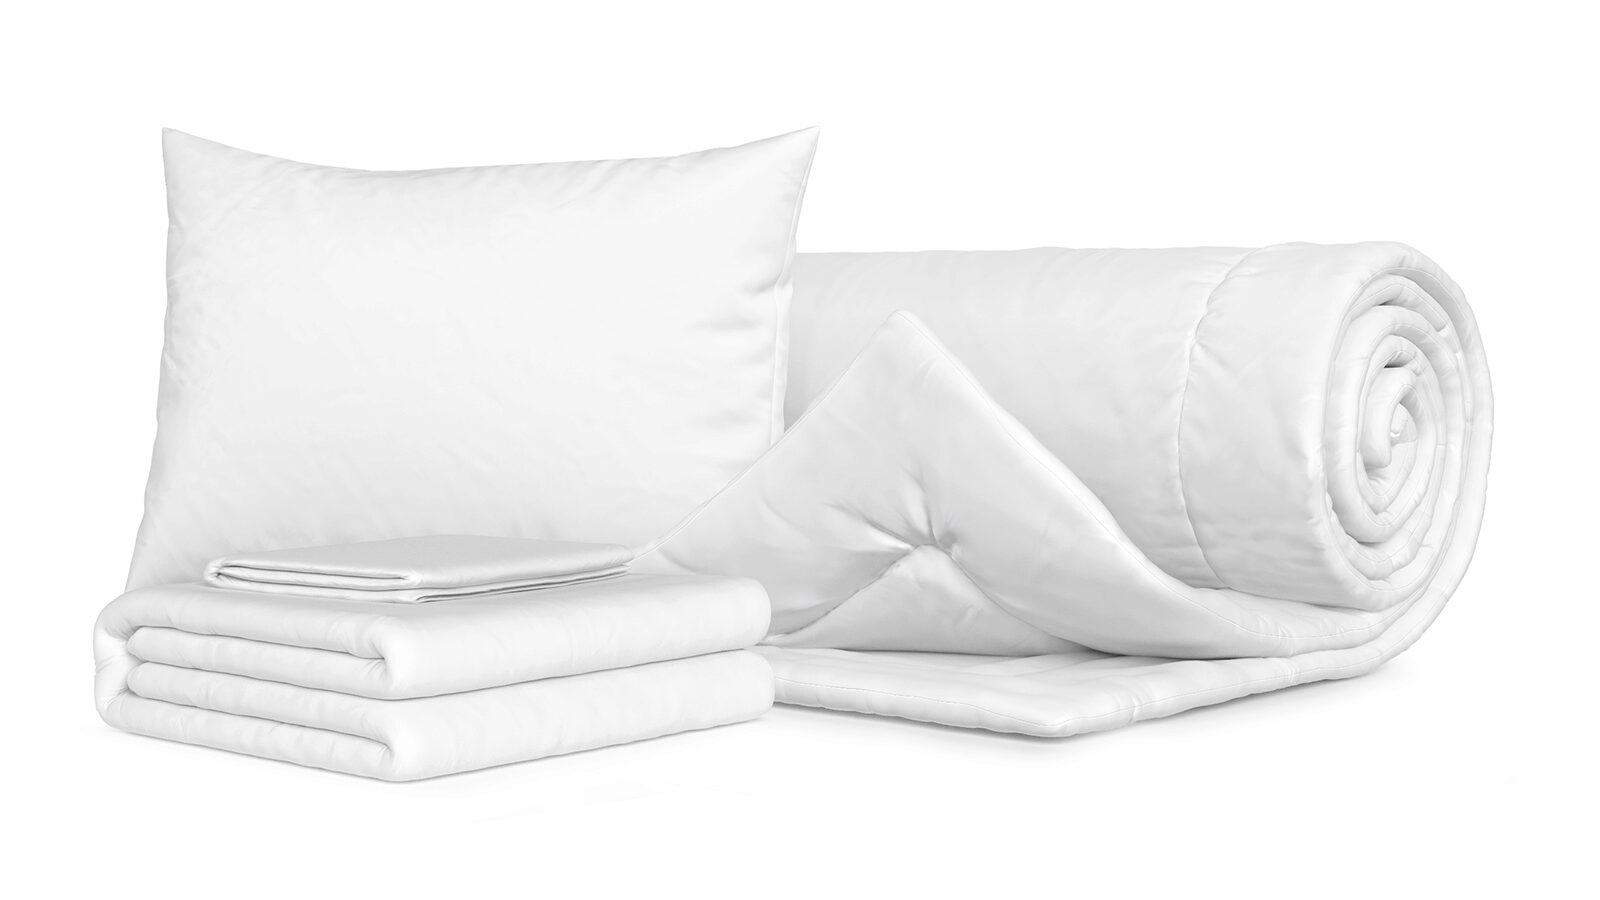 Комплект Одеяло Beat + Подушка Sky + Комплект постельного белья Comfort Cotton, цвет: Белый